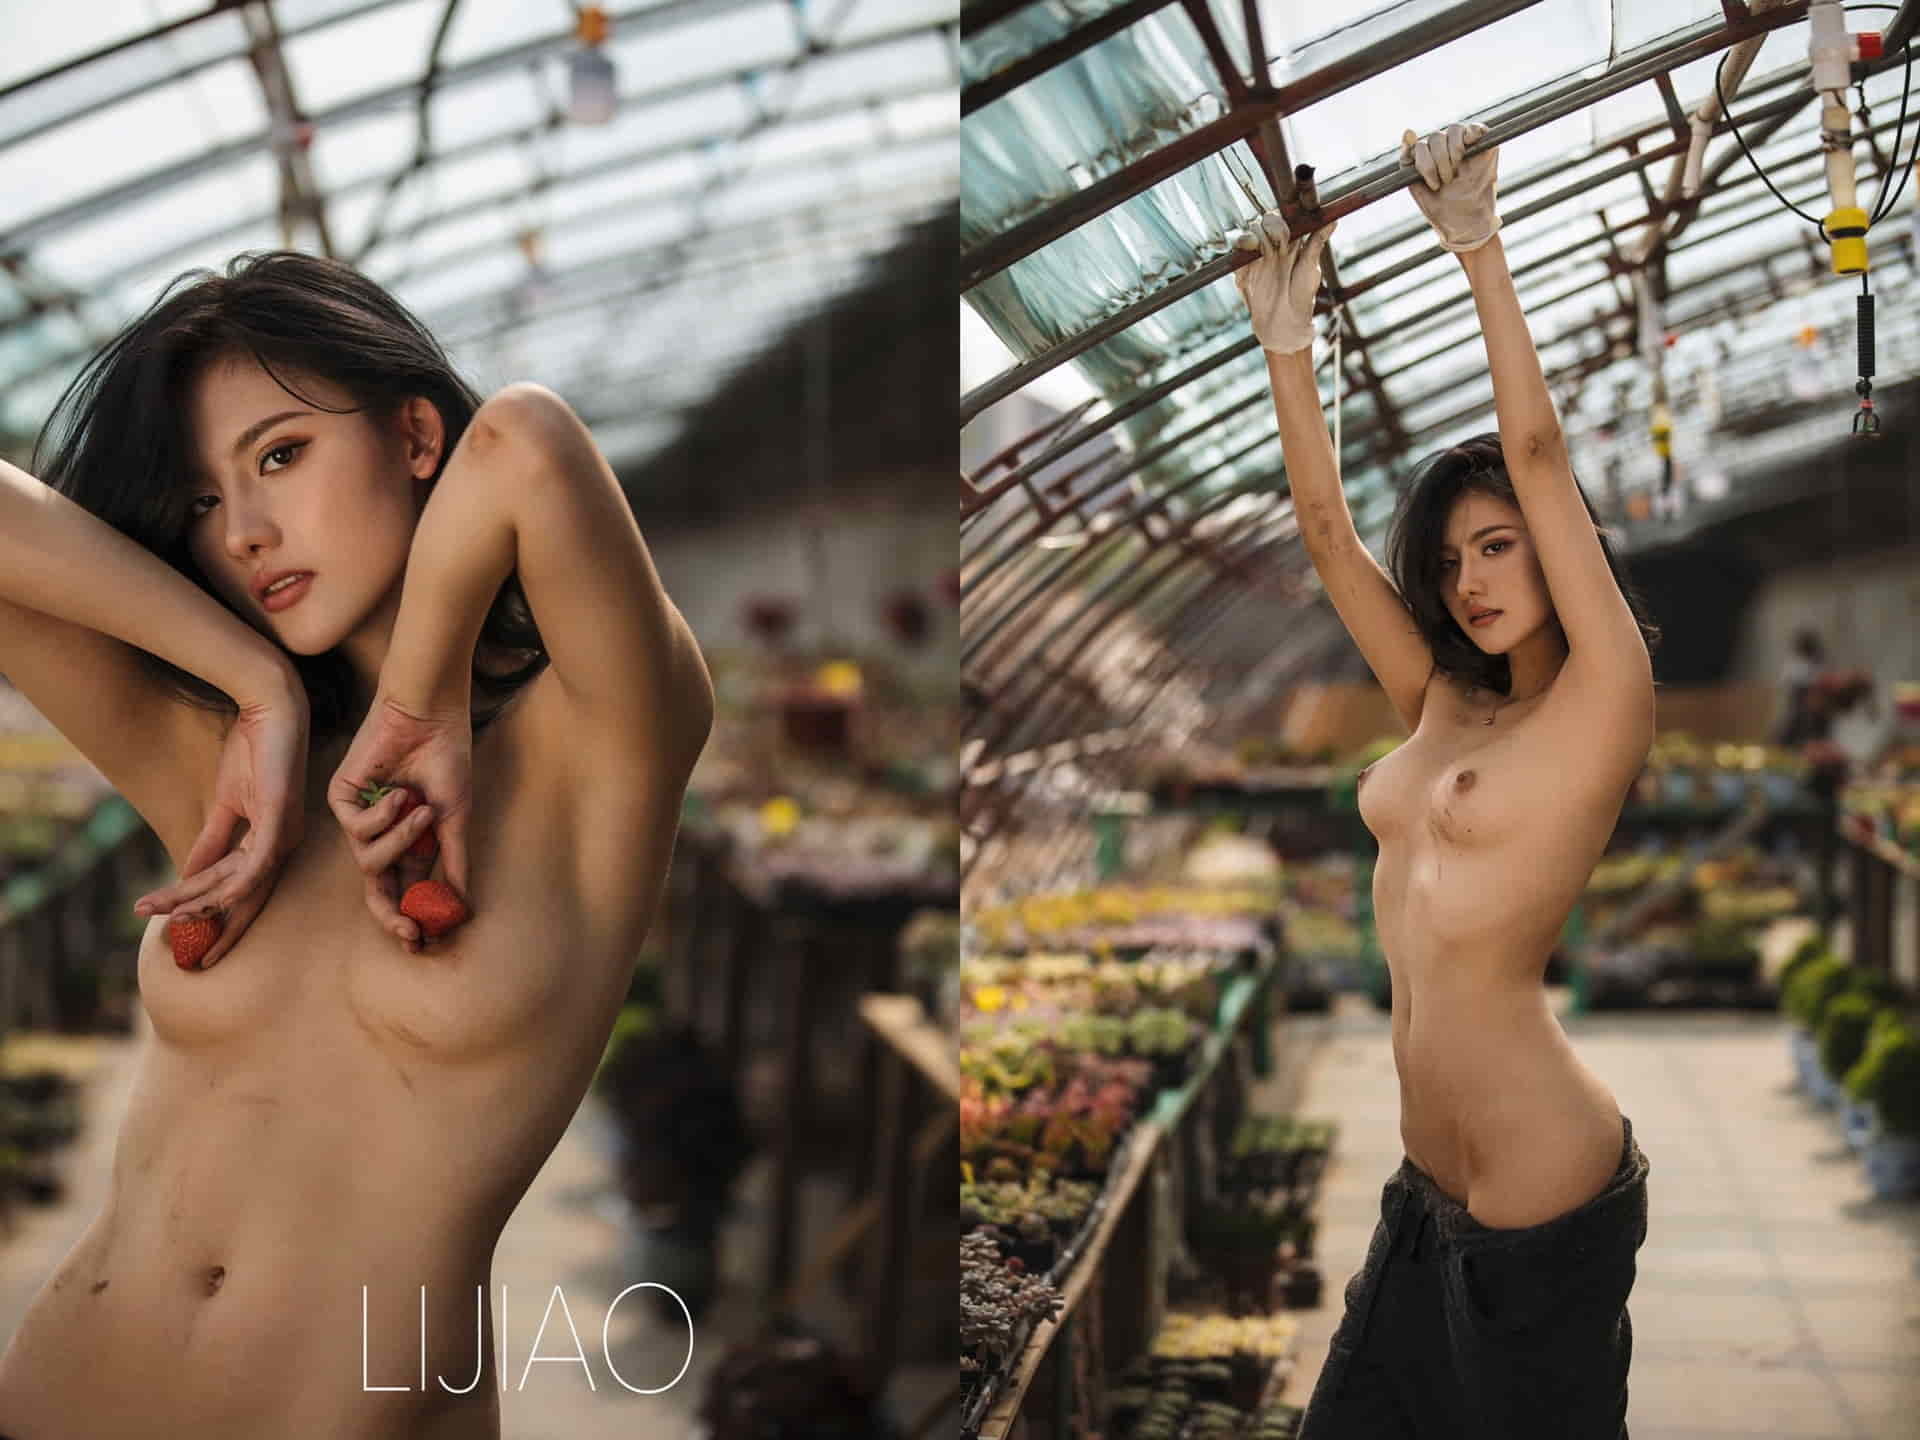 エロと美学の路線をとるTwitterカメラマン【LIJIAO】女体アート個人撮影